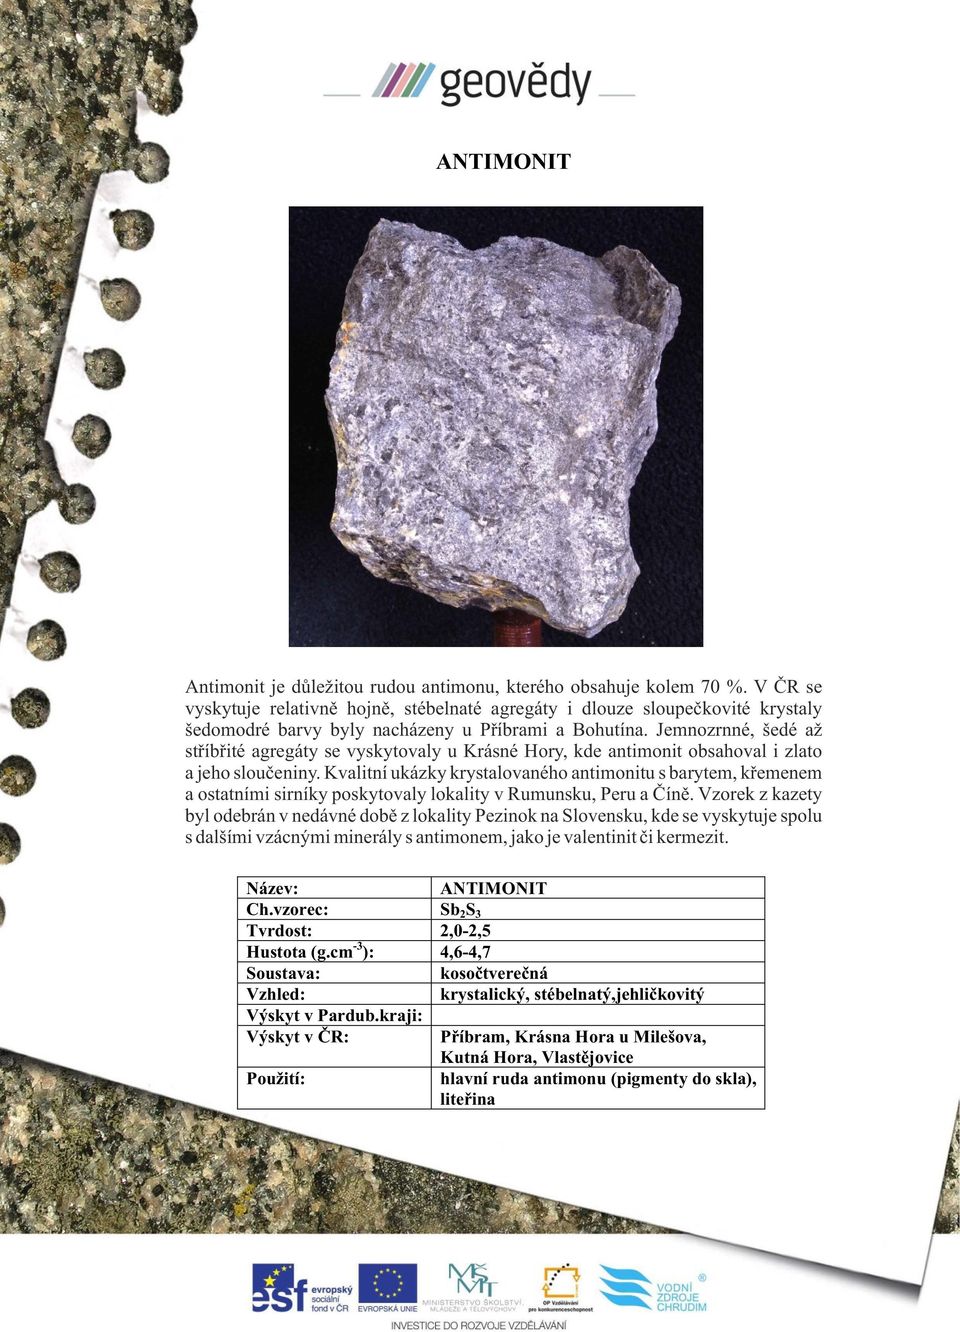 Jemnozrnné, šedé až stříbřité agregáty se vyskytovaly u Krásné Hory, kde antimonit obsahoval i zlato a jeho sloučeniny.